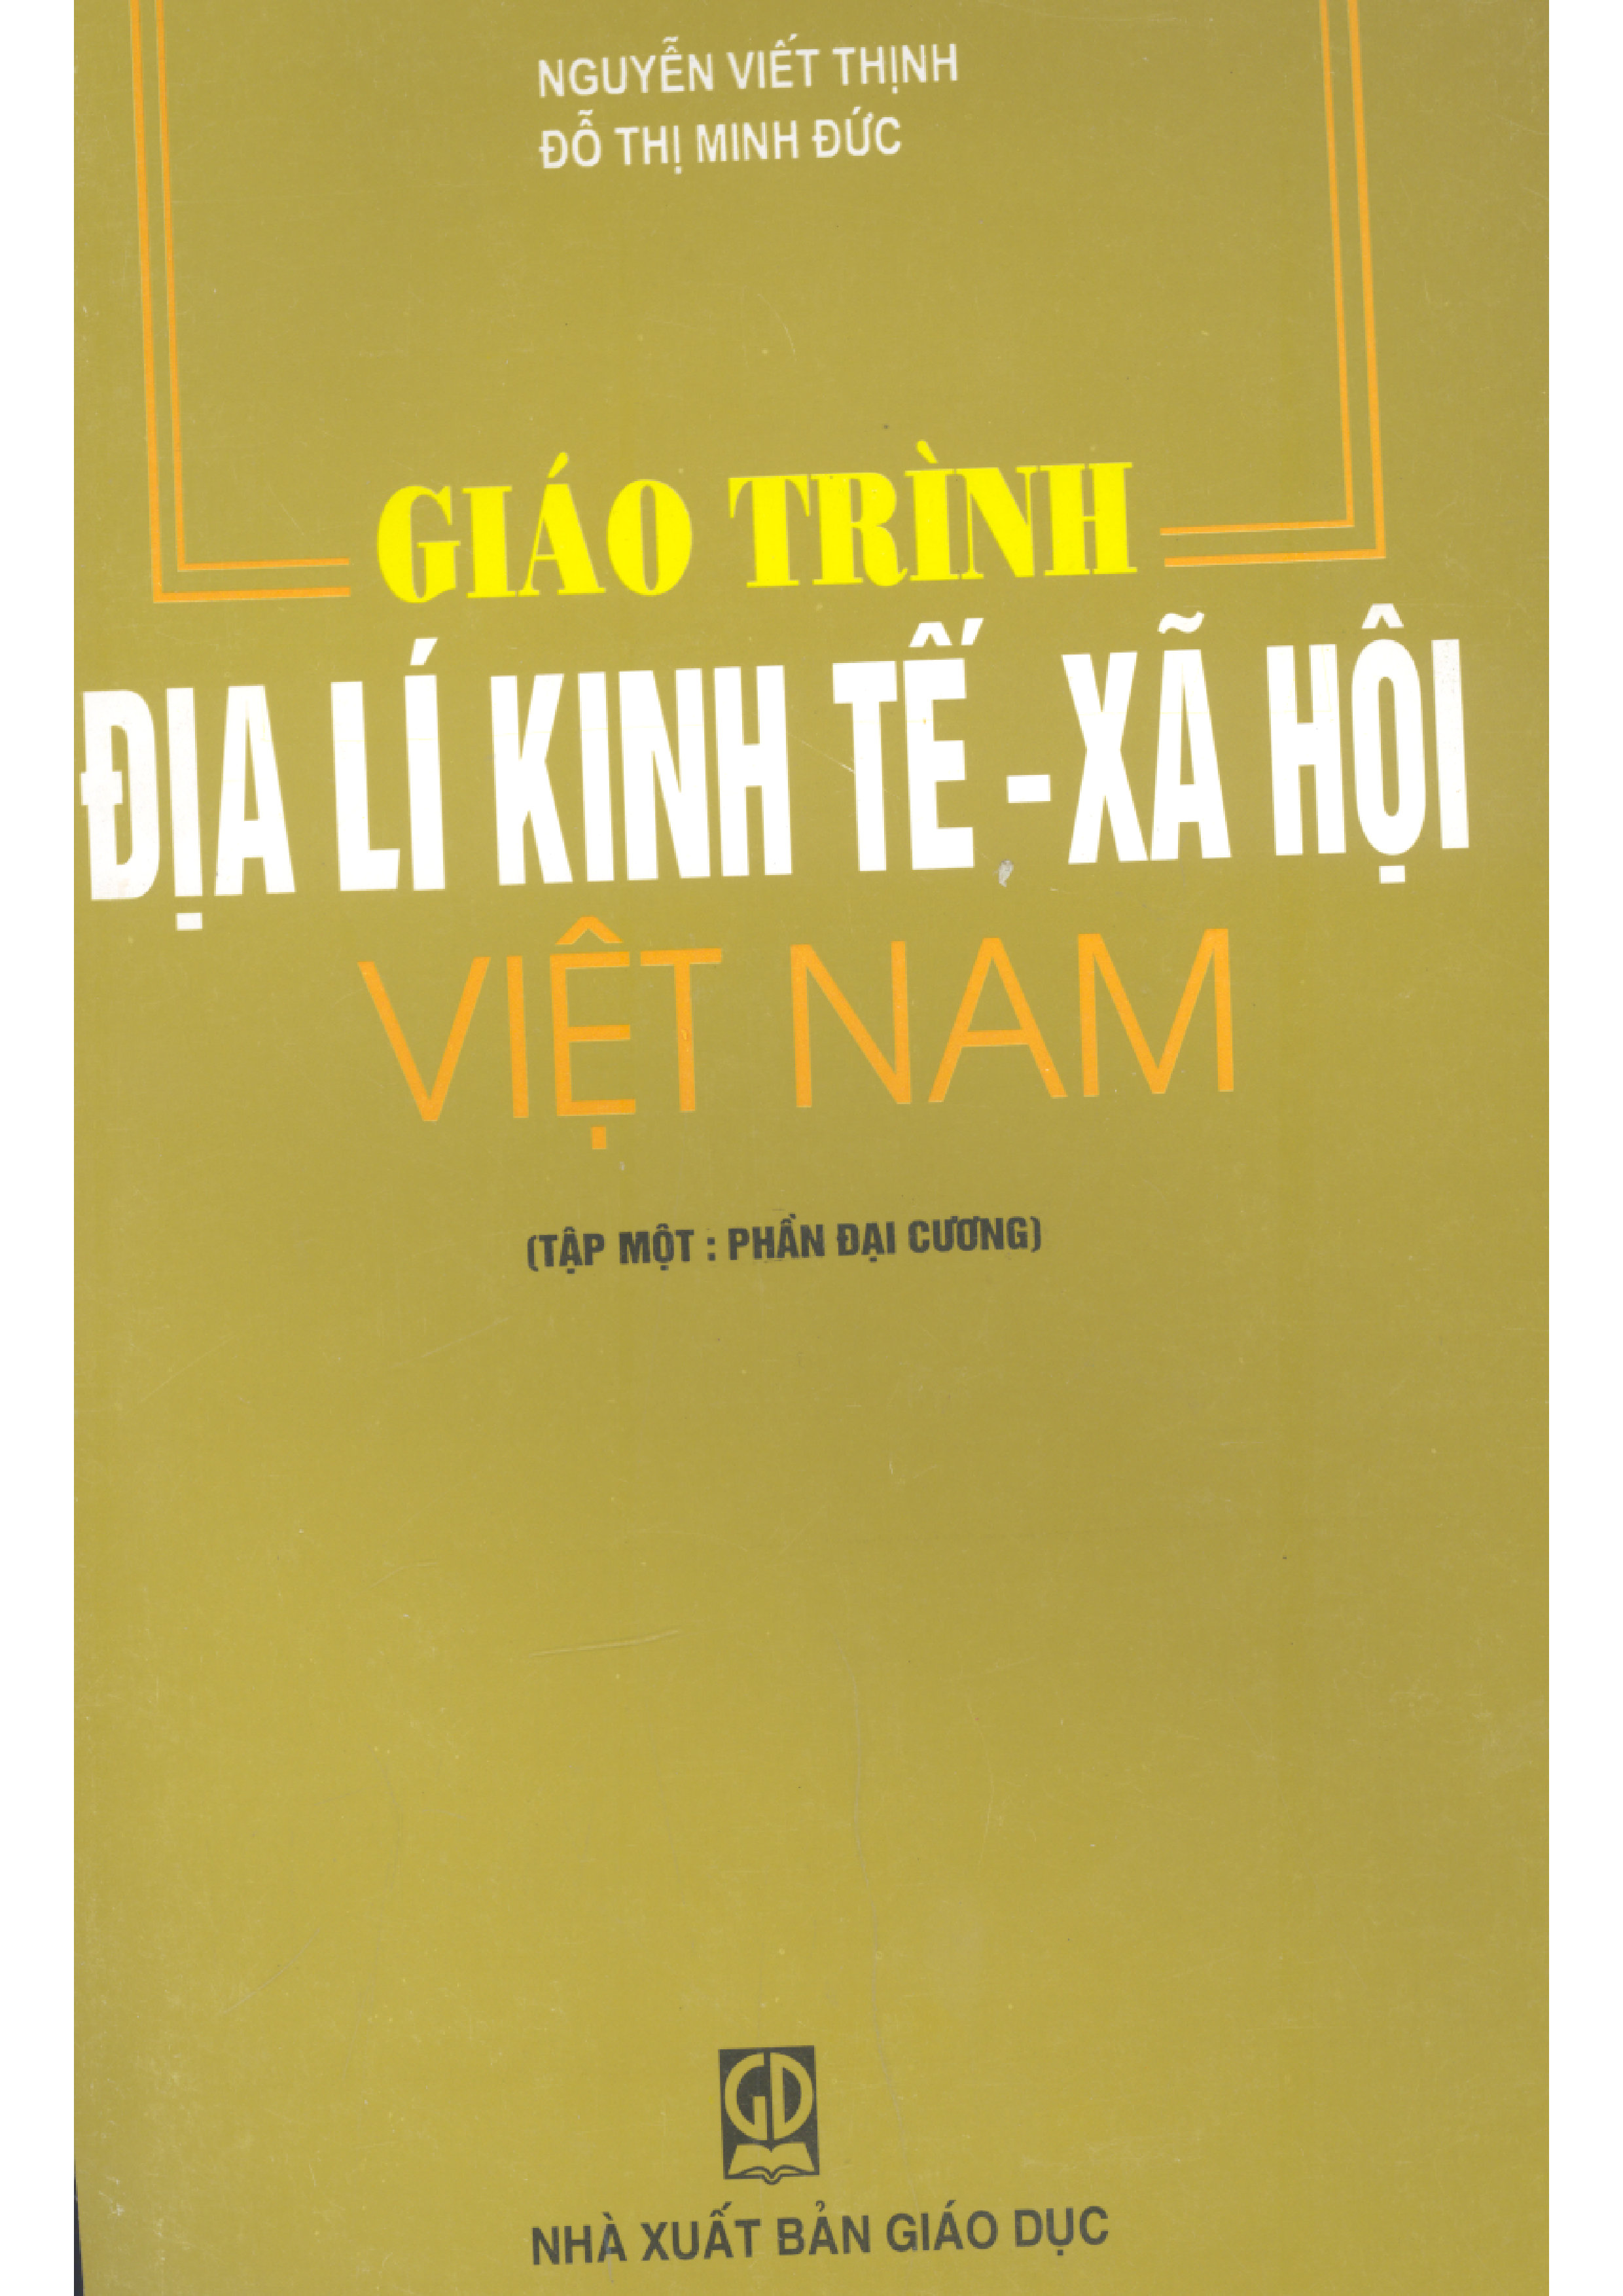 Giáo trình Địa lí kinh tế - xã hội Việt Nam - Tập 1: Phần đại cương